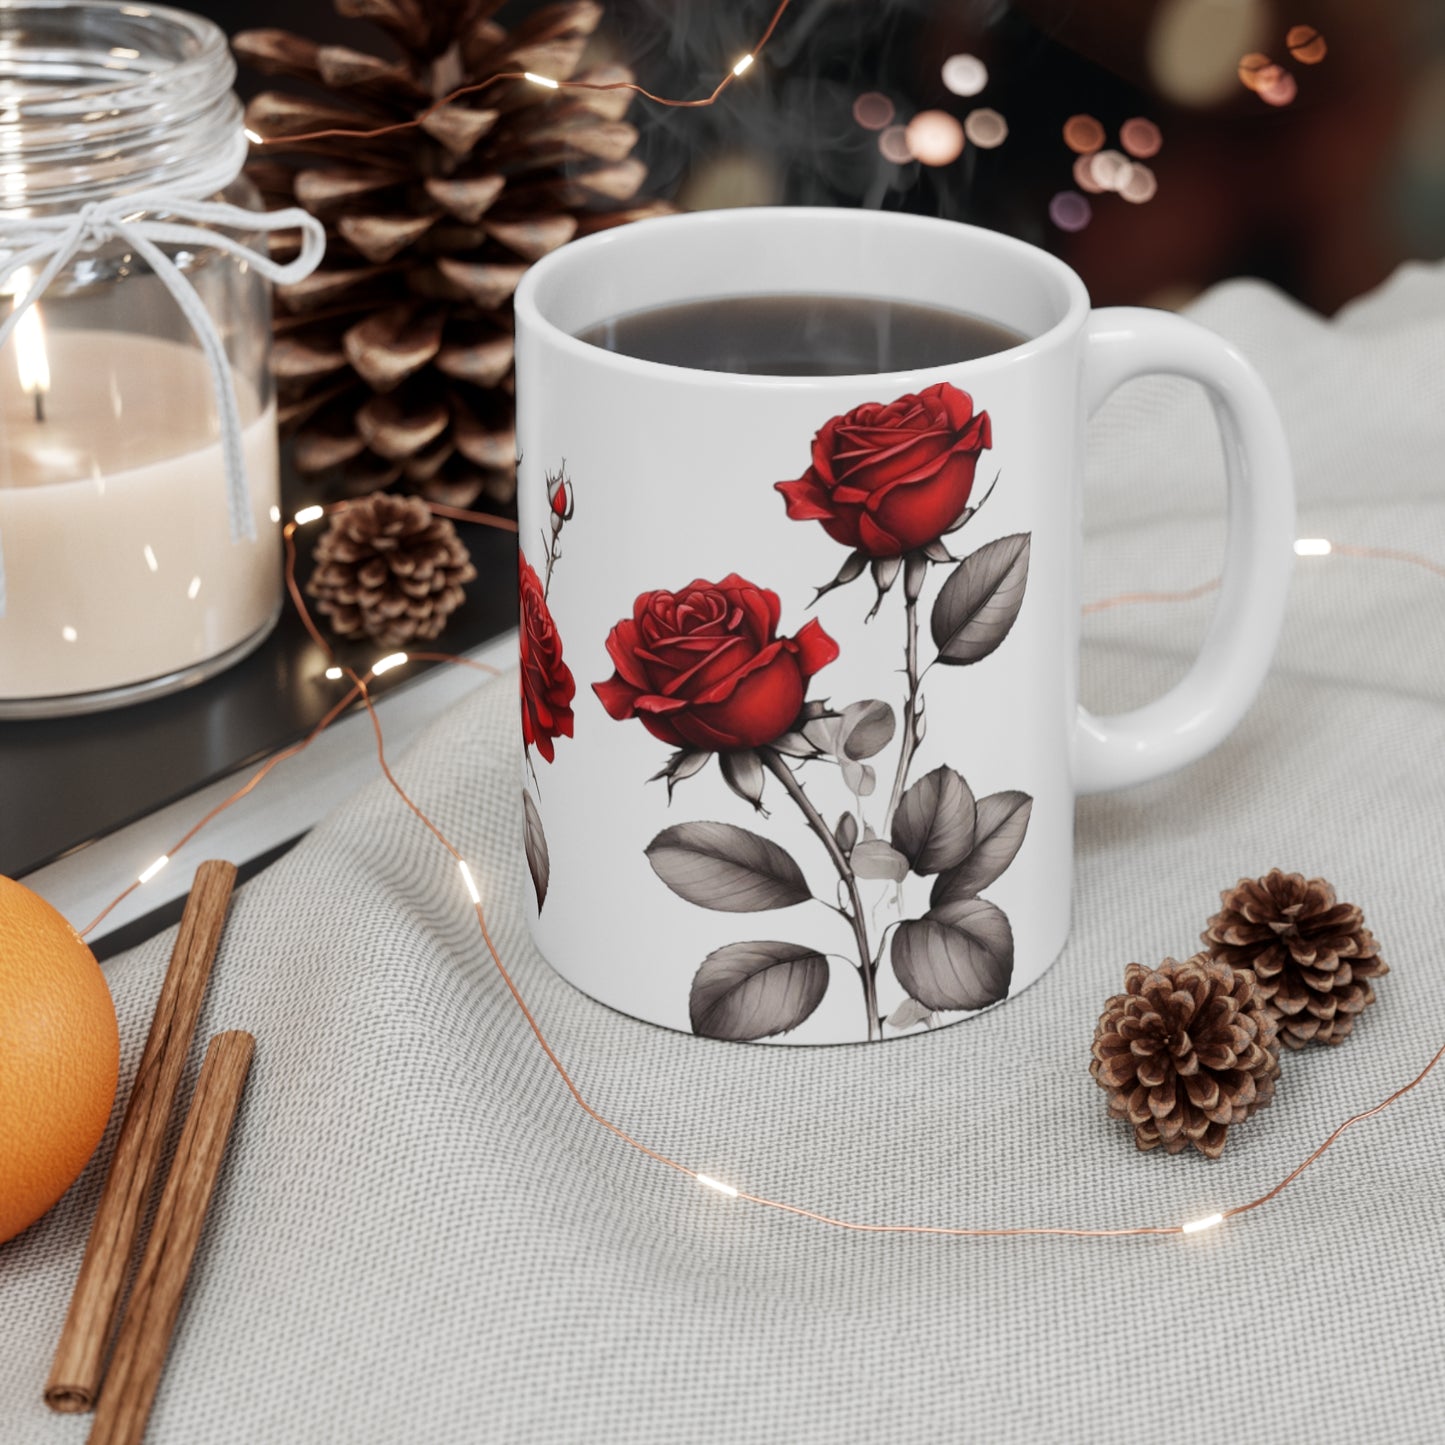 Sketch Art Red Roses Mug - Ceramic Coffee Mug 11oz